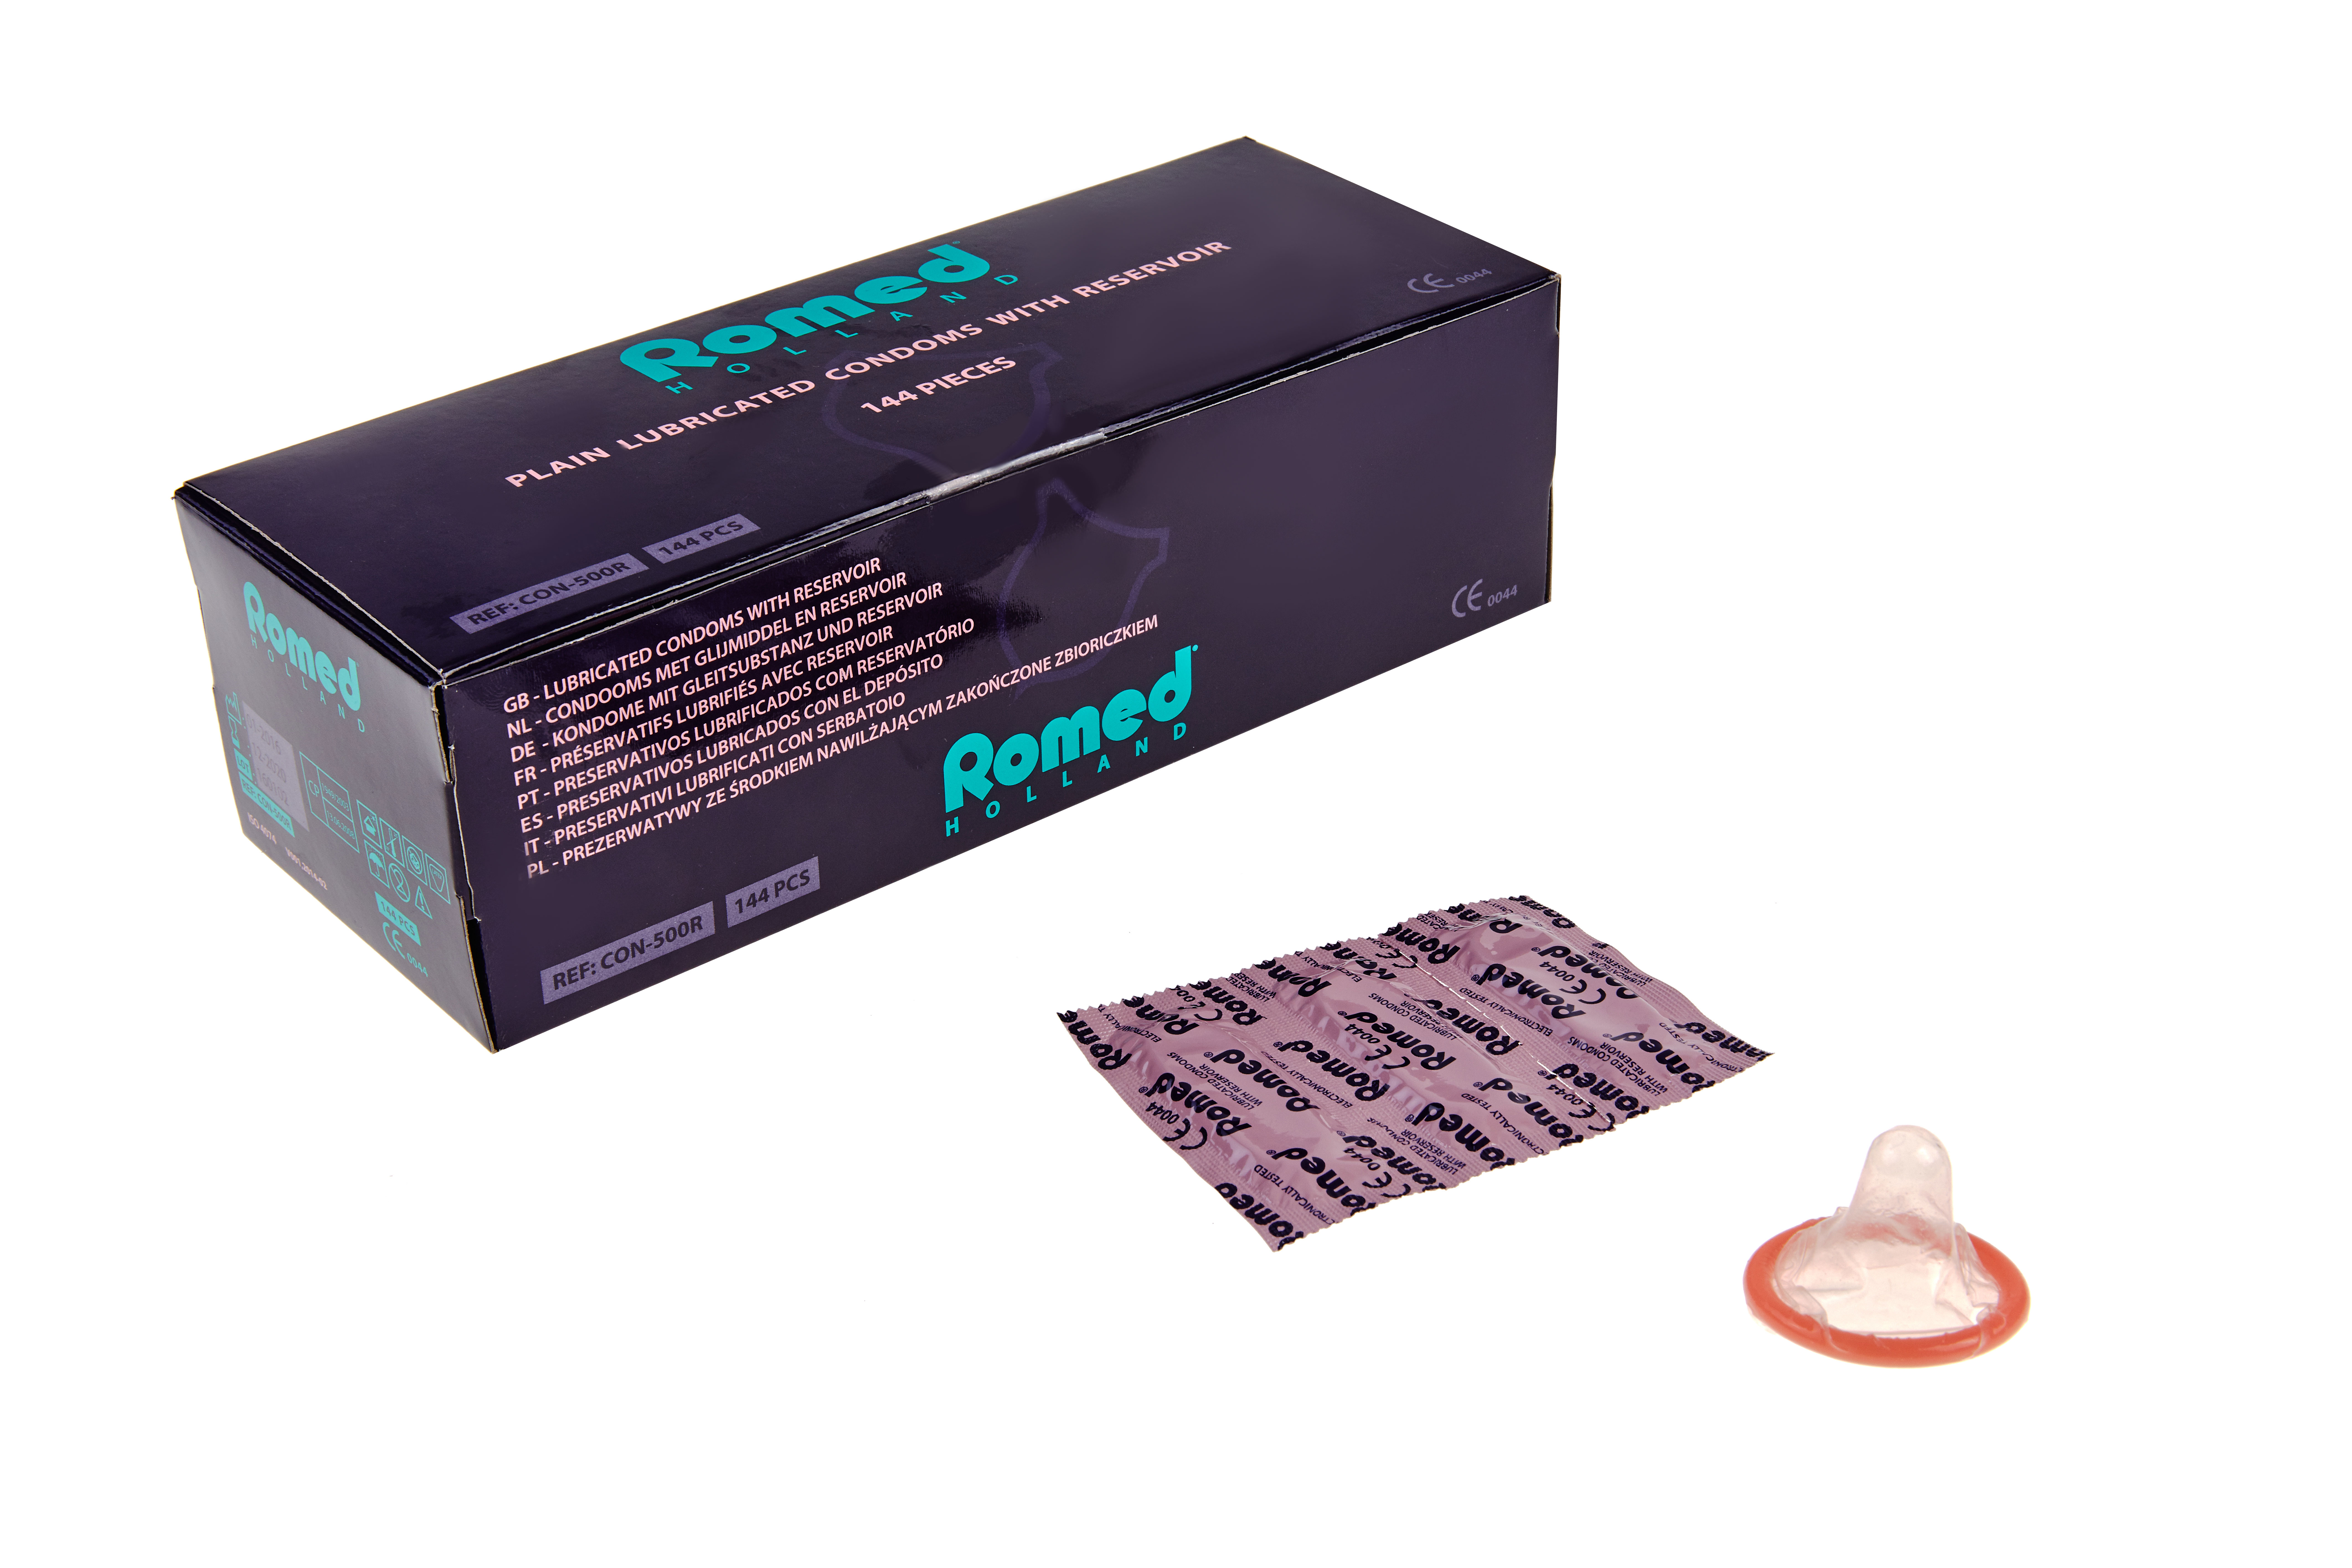 CON-500R Bandes de 3 préservatifs Romed, 48 bandes de 3 unités = 144 unités par boîte intérieure (= 1 lot), 50 x 144 = 7 200 unités par carton.